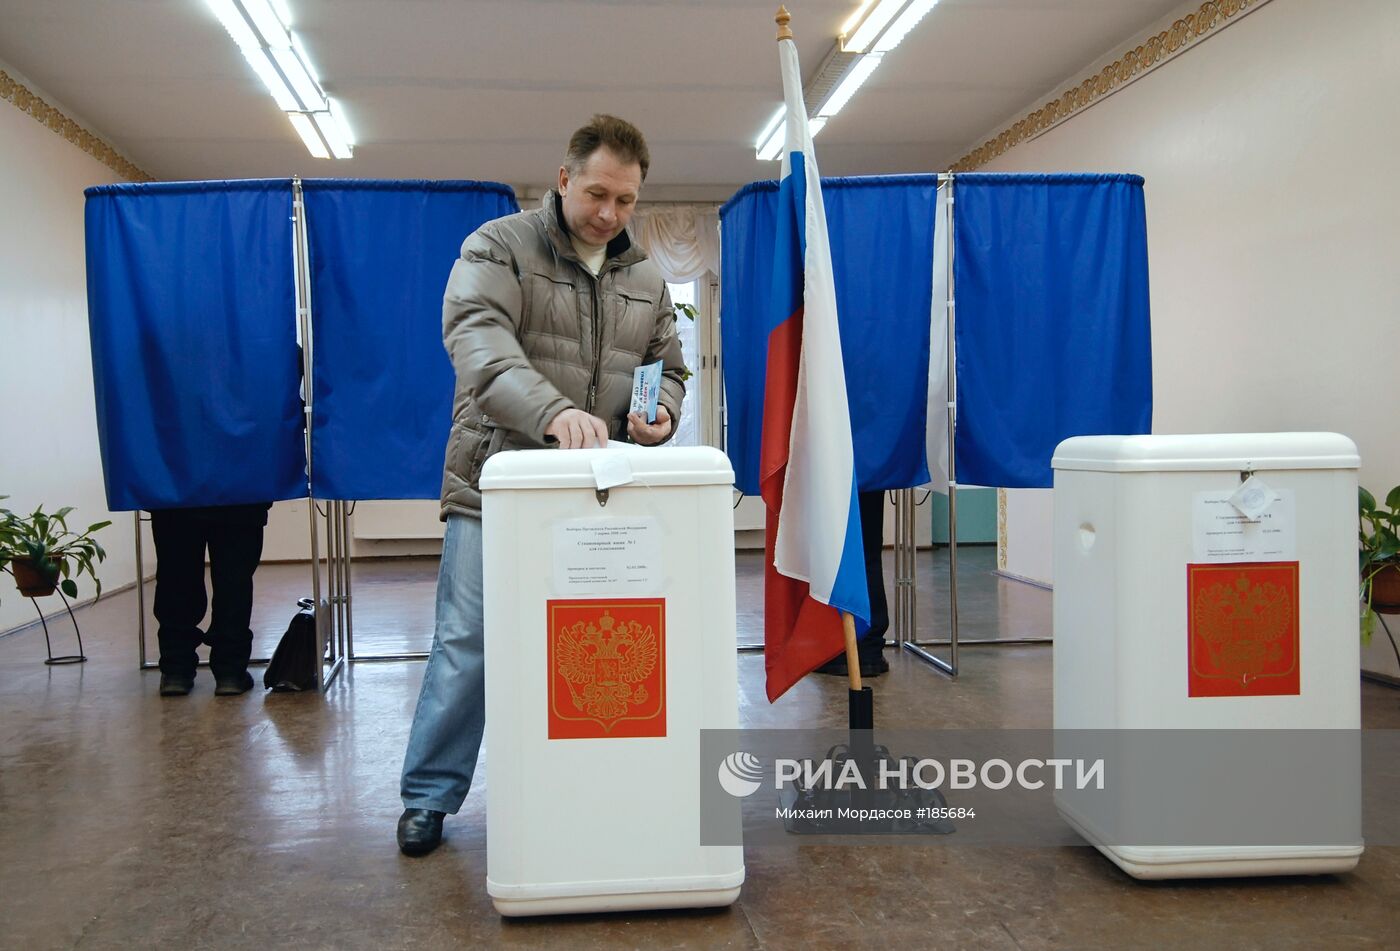 Президентские выборы в России 